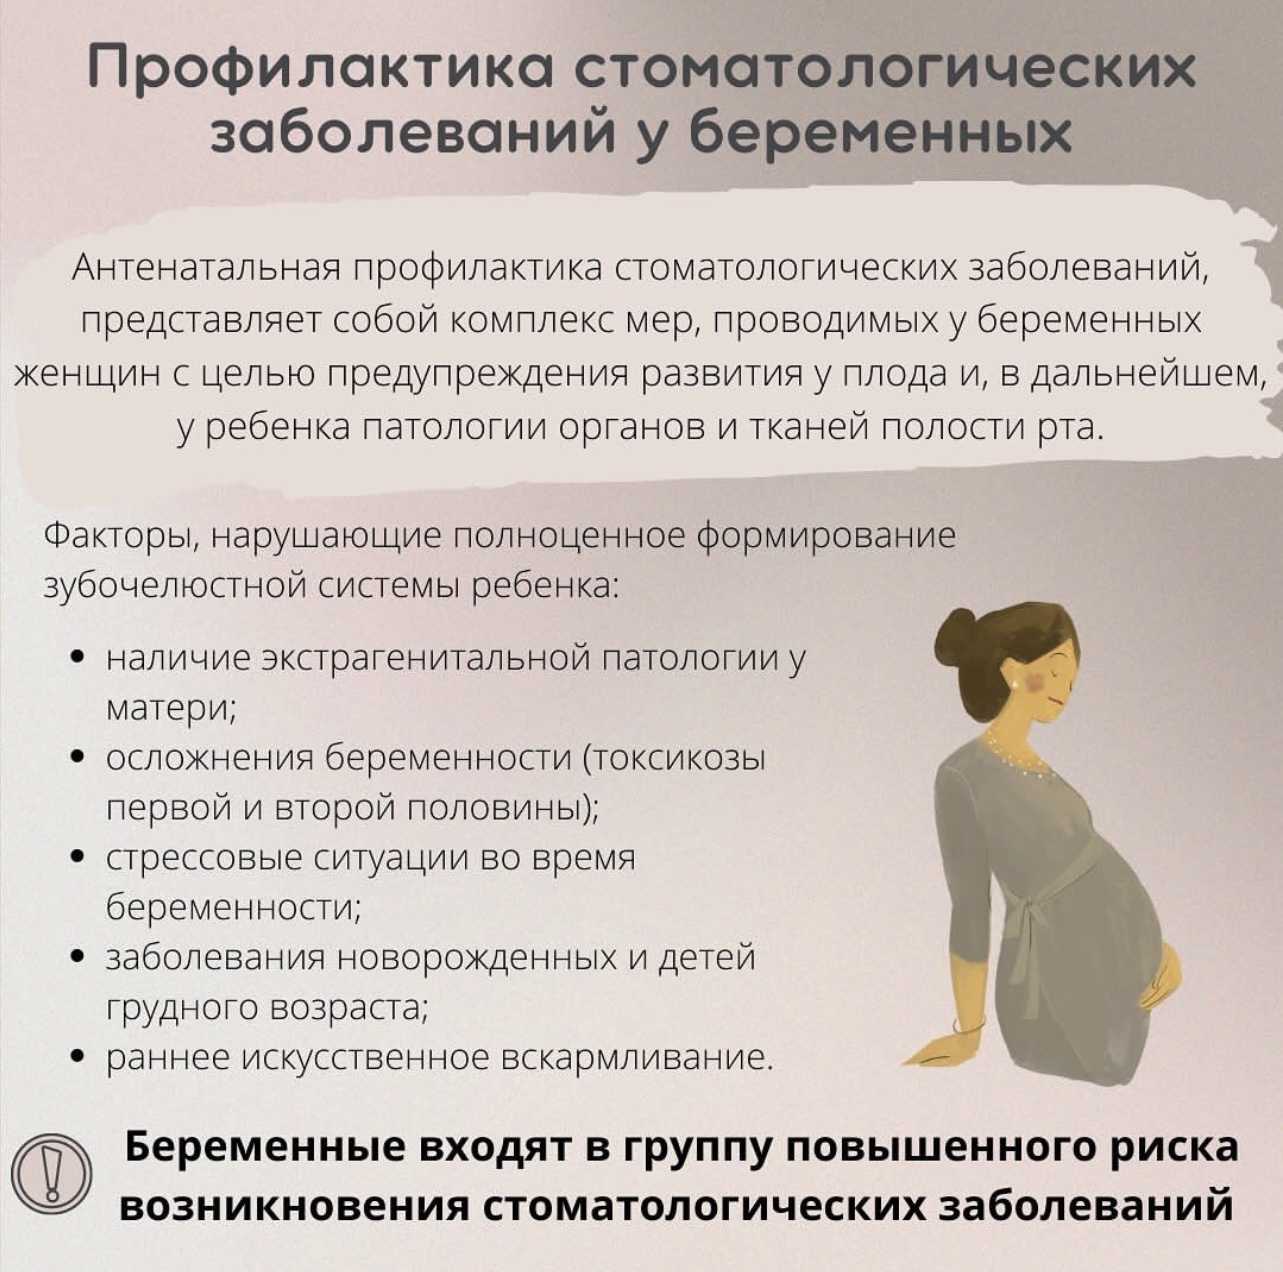 Профилактика стоматологических заболеваний у беременных женщин.